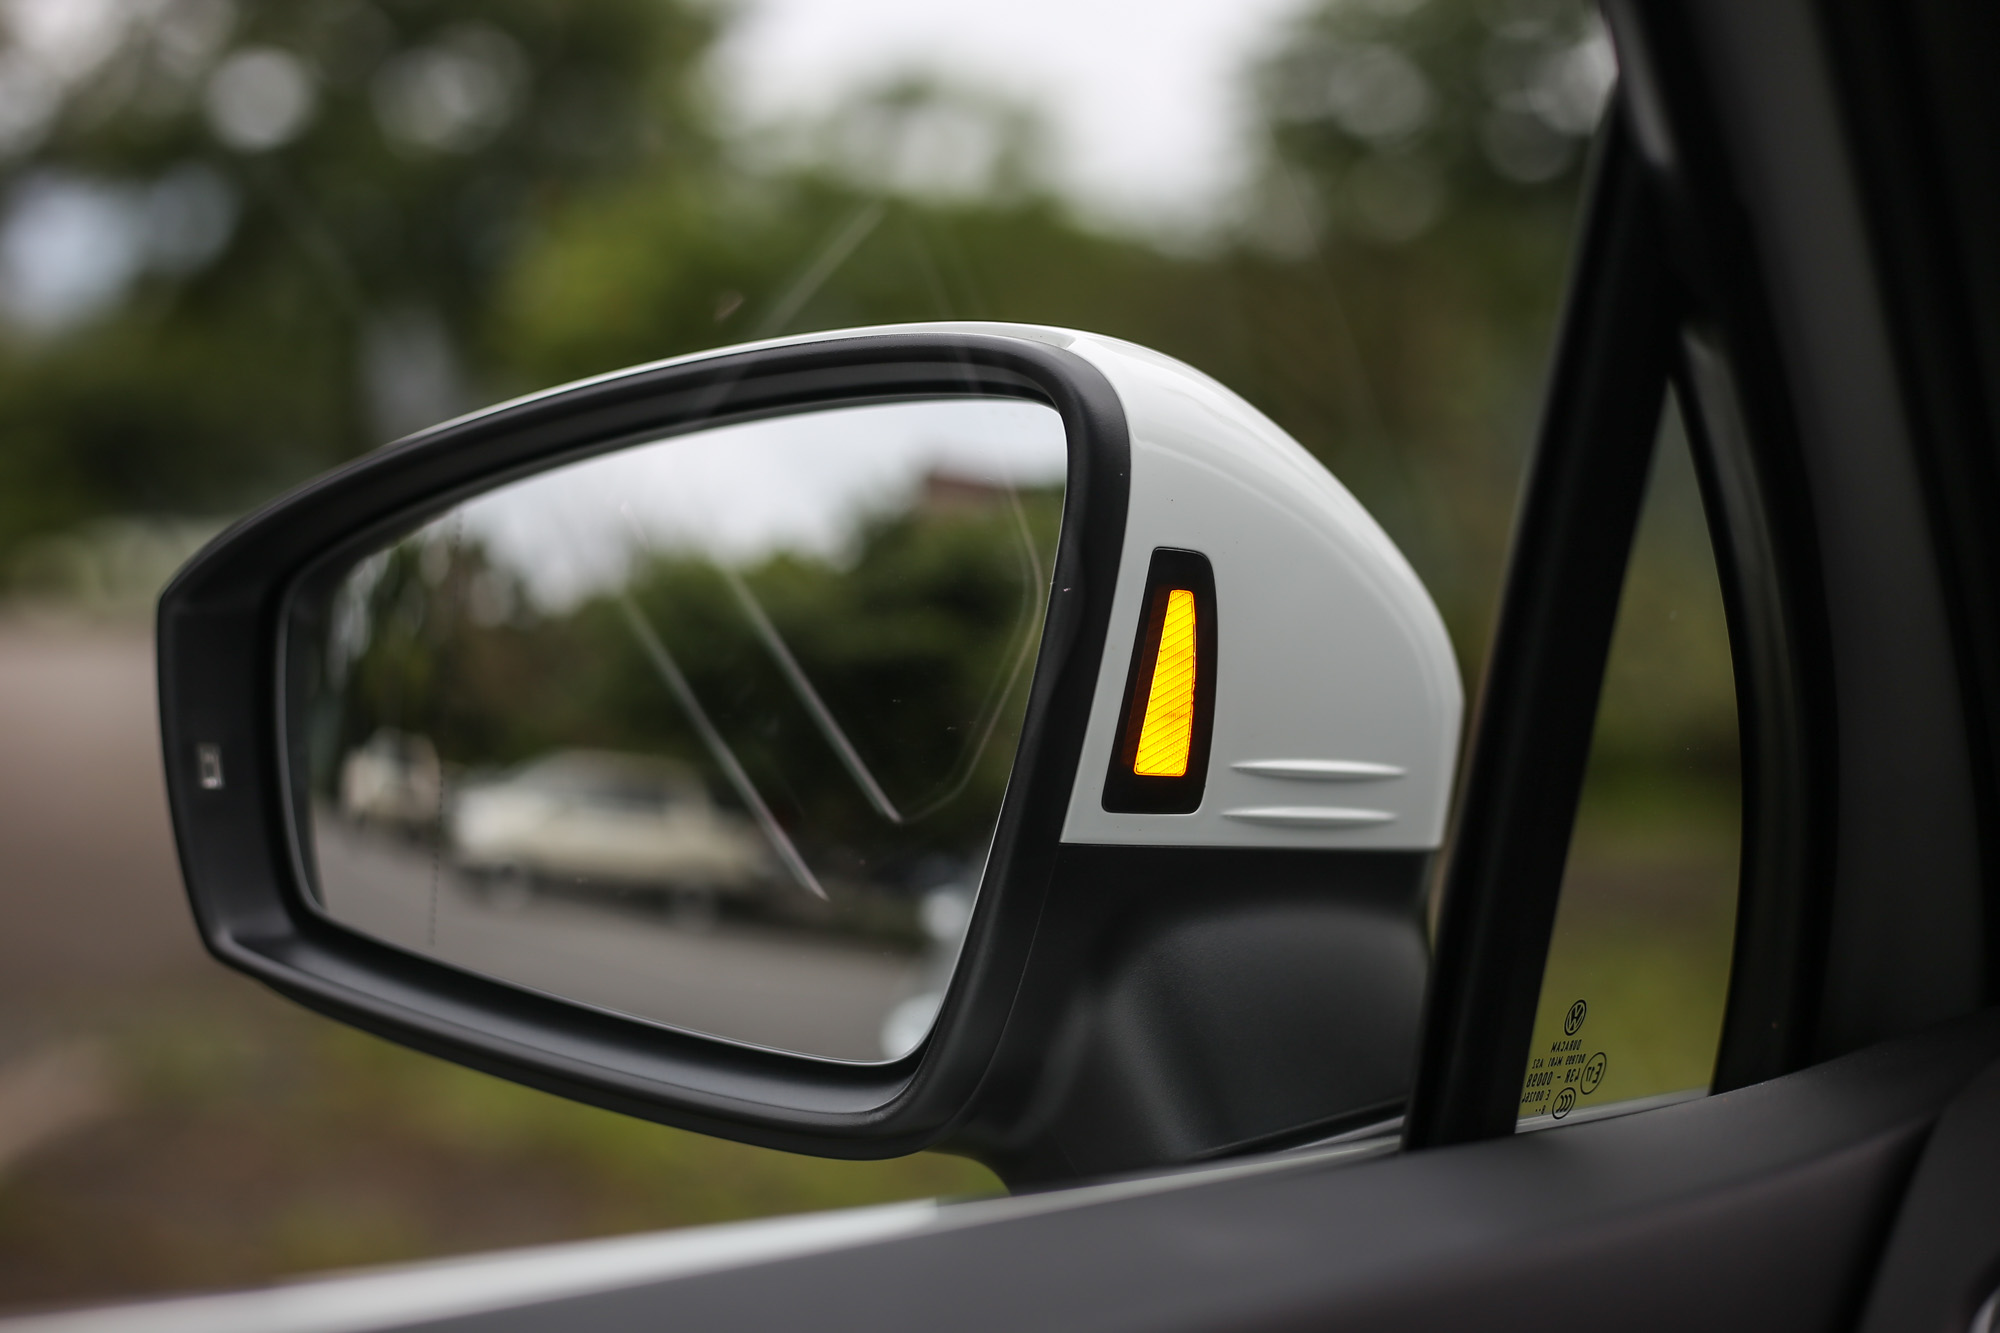 車側盲點警示系統的警示燈設計於後視鏡內側，相對於設計在後視鏡玻璃上更為清晰易辨。